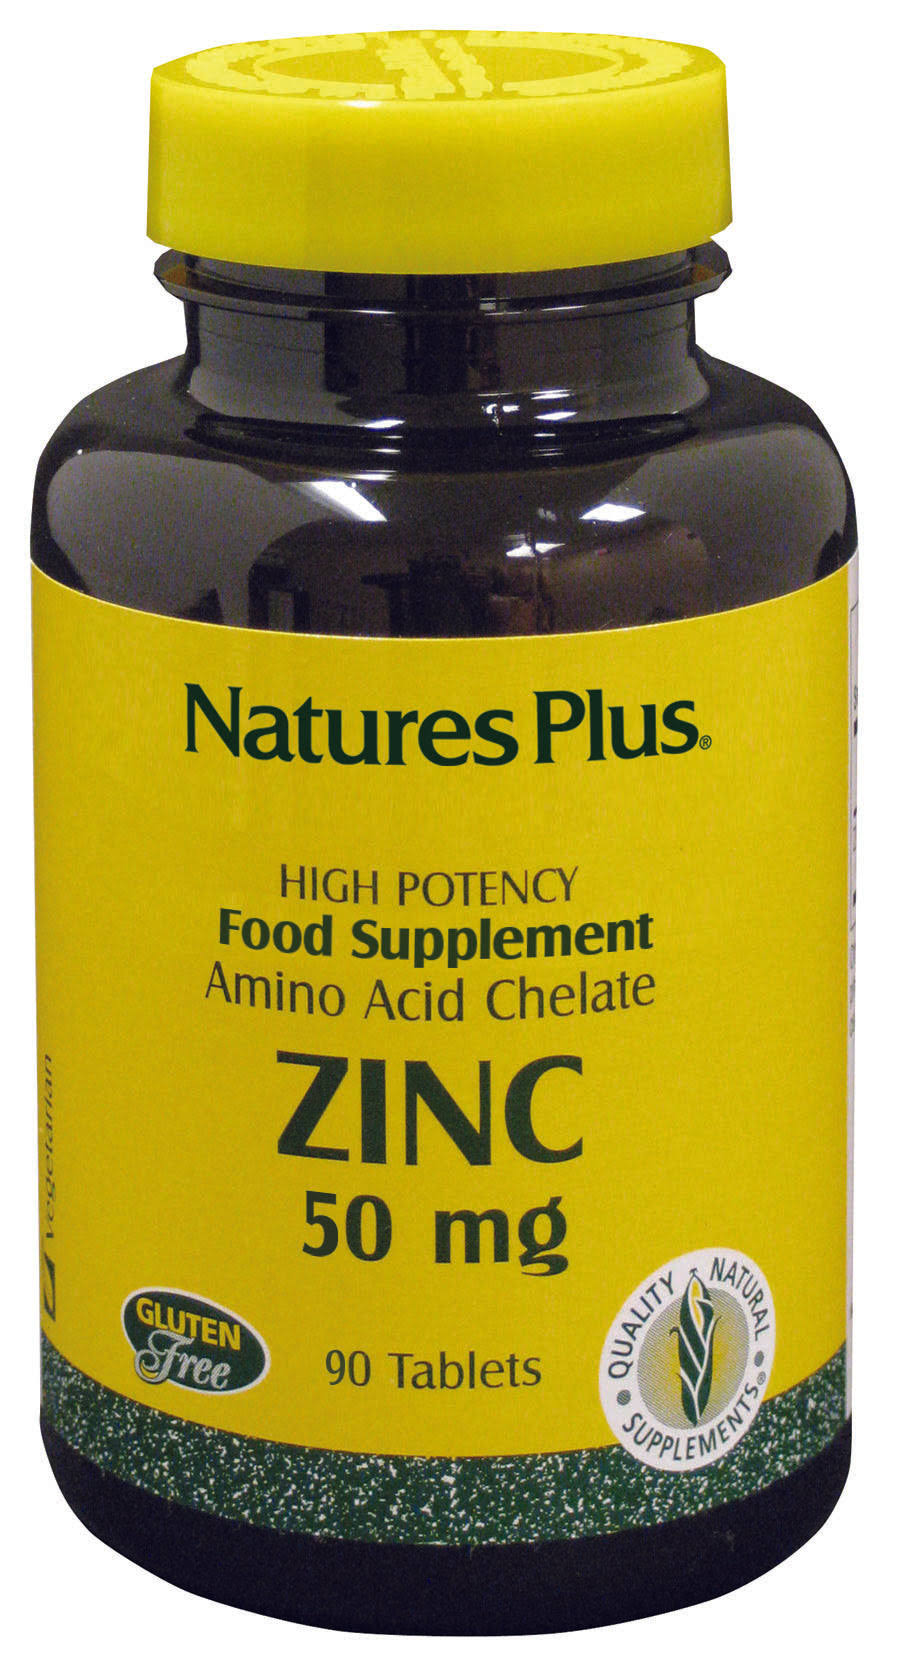 Nature's Plus Zinc Supplement - 50mg, 90 Tablets